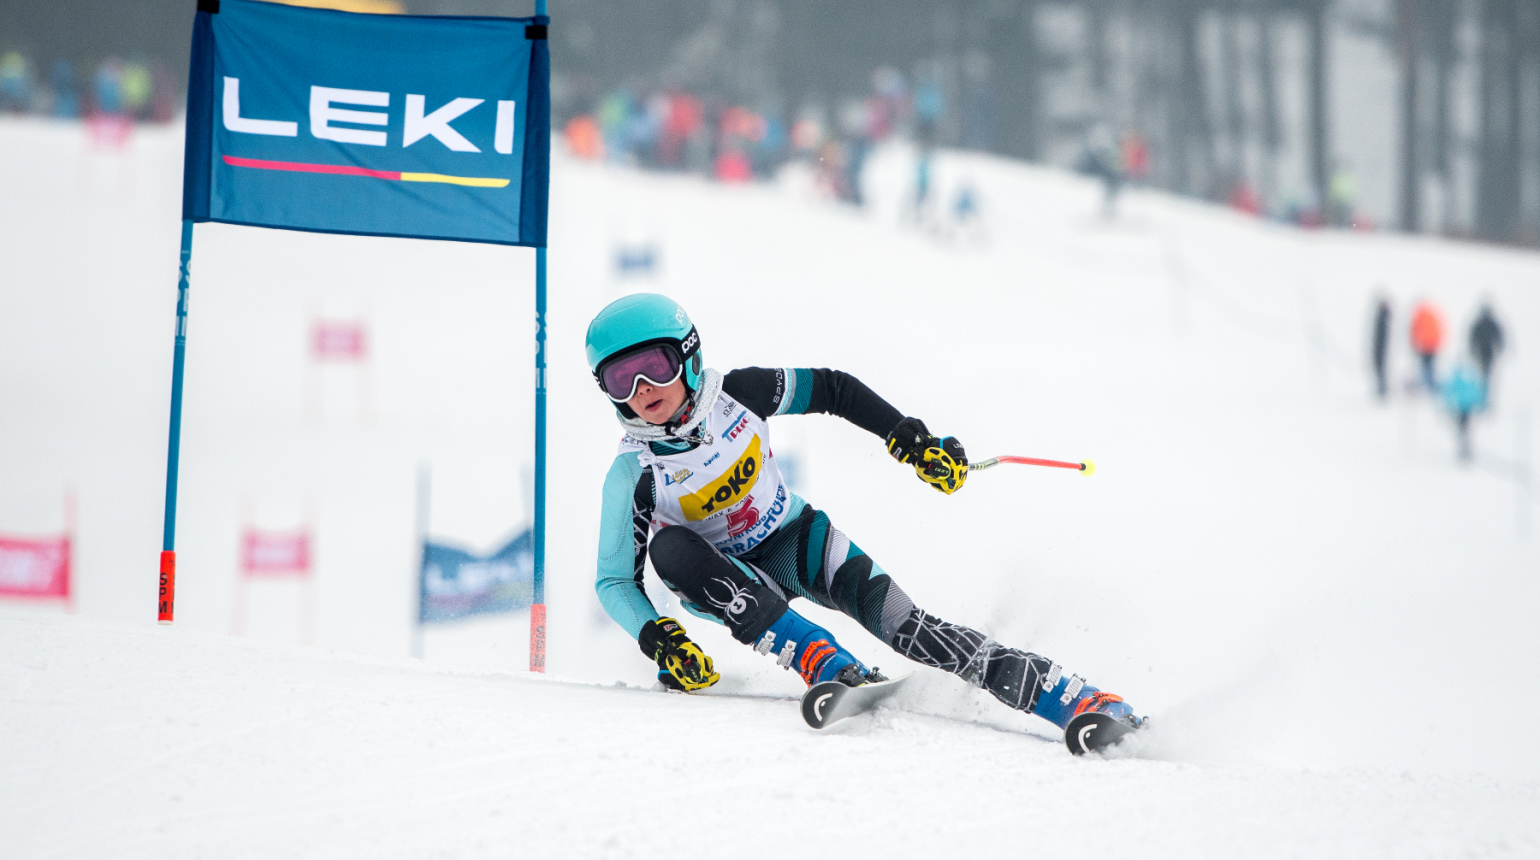 Finále LEKI CUPU proběhlo na Ještědu, mladé naděje absolvovaly dva závody obřího slalomu